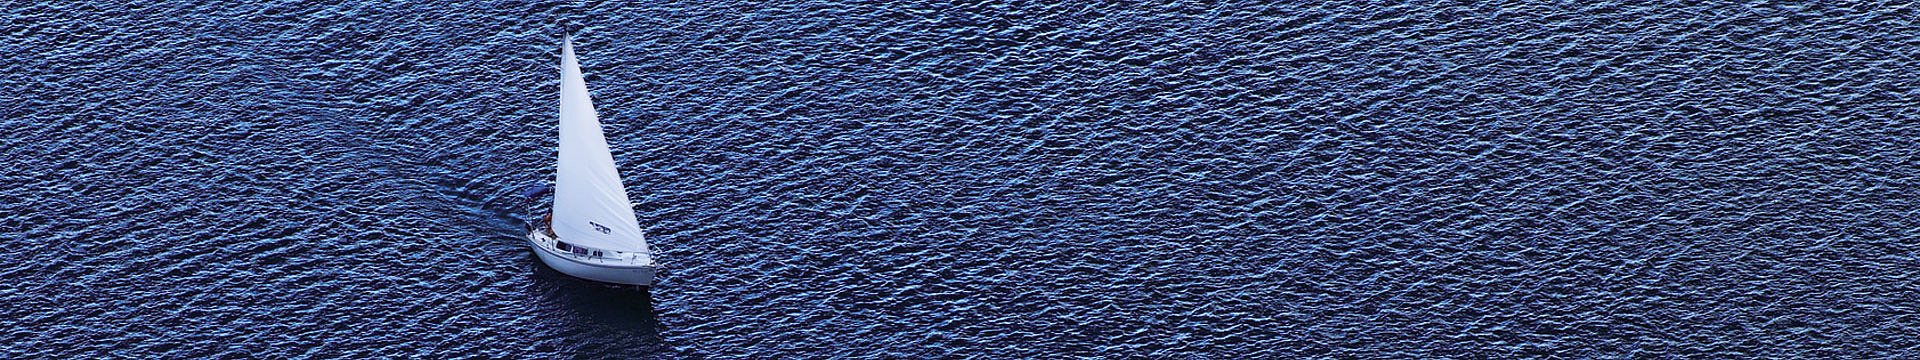 Luftaufnahme eines Segelbootes auf einem dunkelblauen See